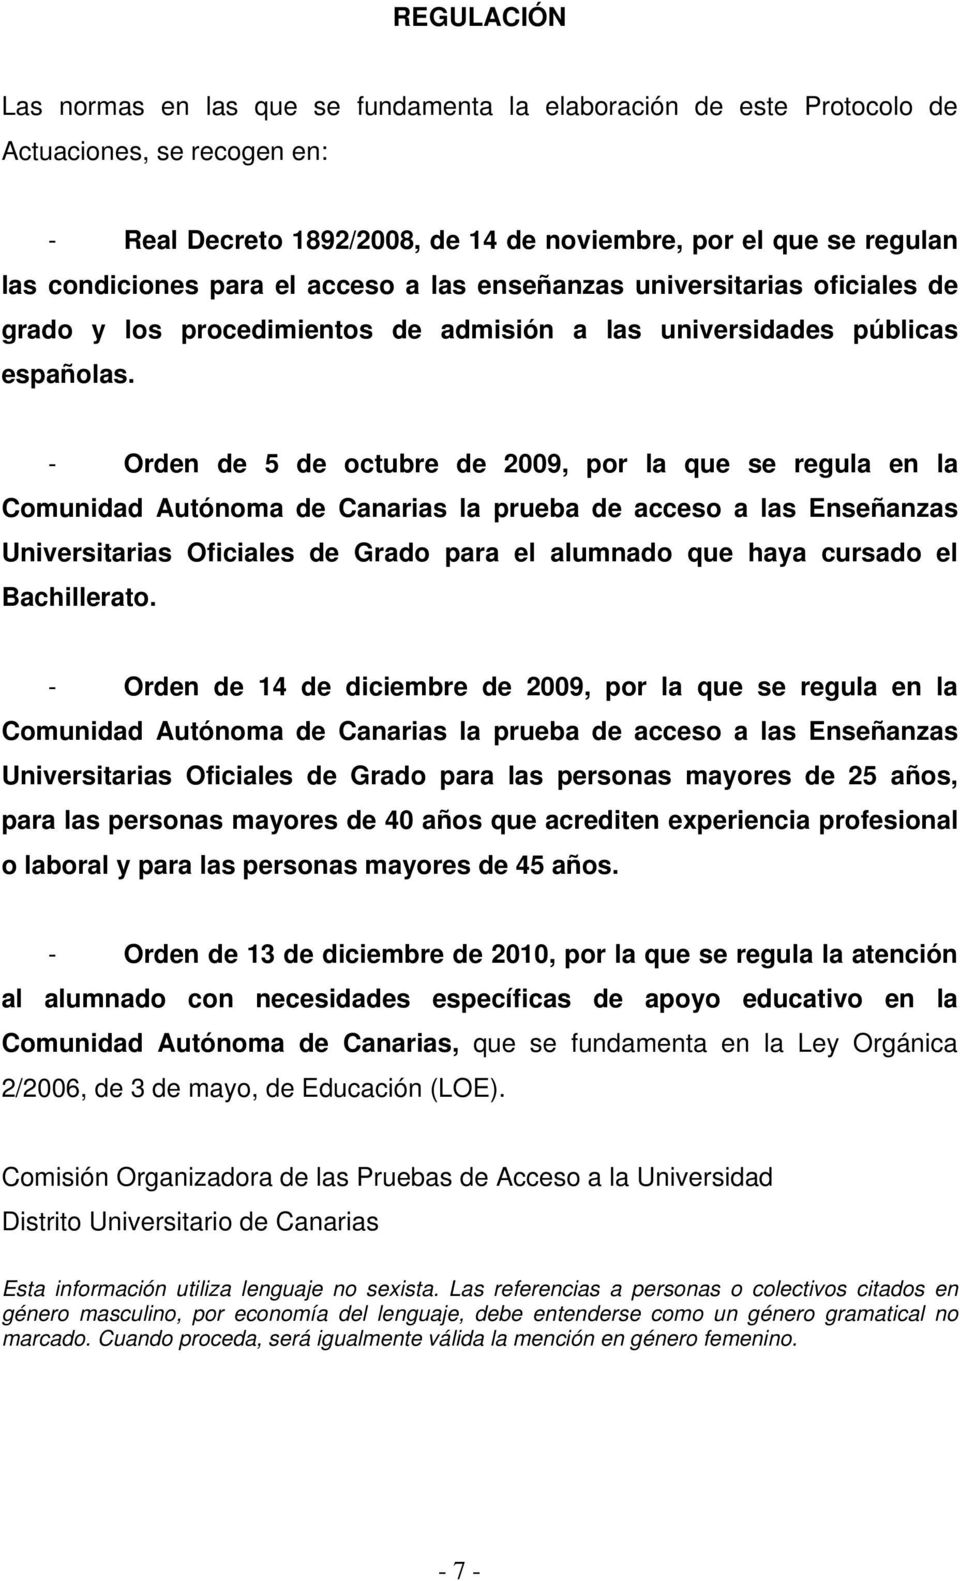 - Orden de 5 de ctubre de 2009, pr la que se regula en la Cmunidad Autónma de Canarias la prueba de acces a las Enseñanzas Universitarias Oficiales de Grad para el alumnad que haya cursad el